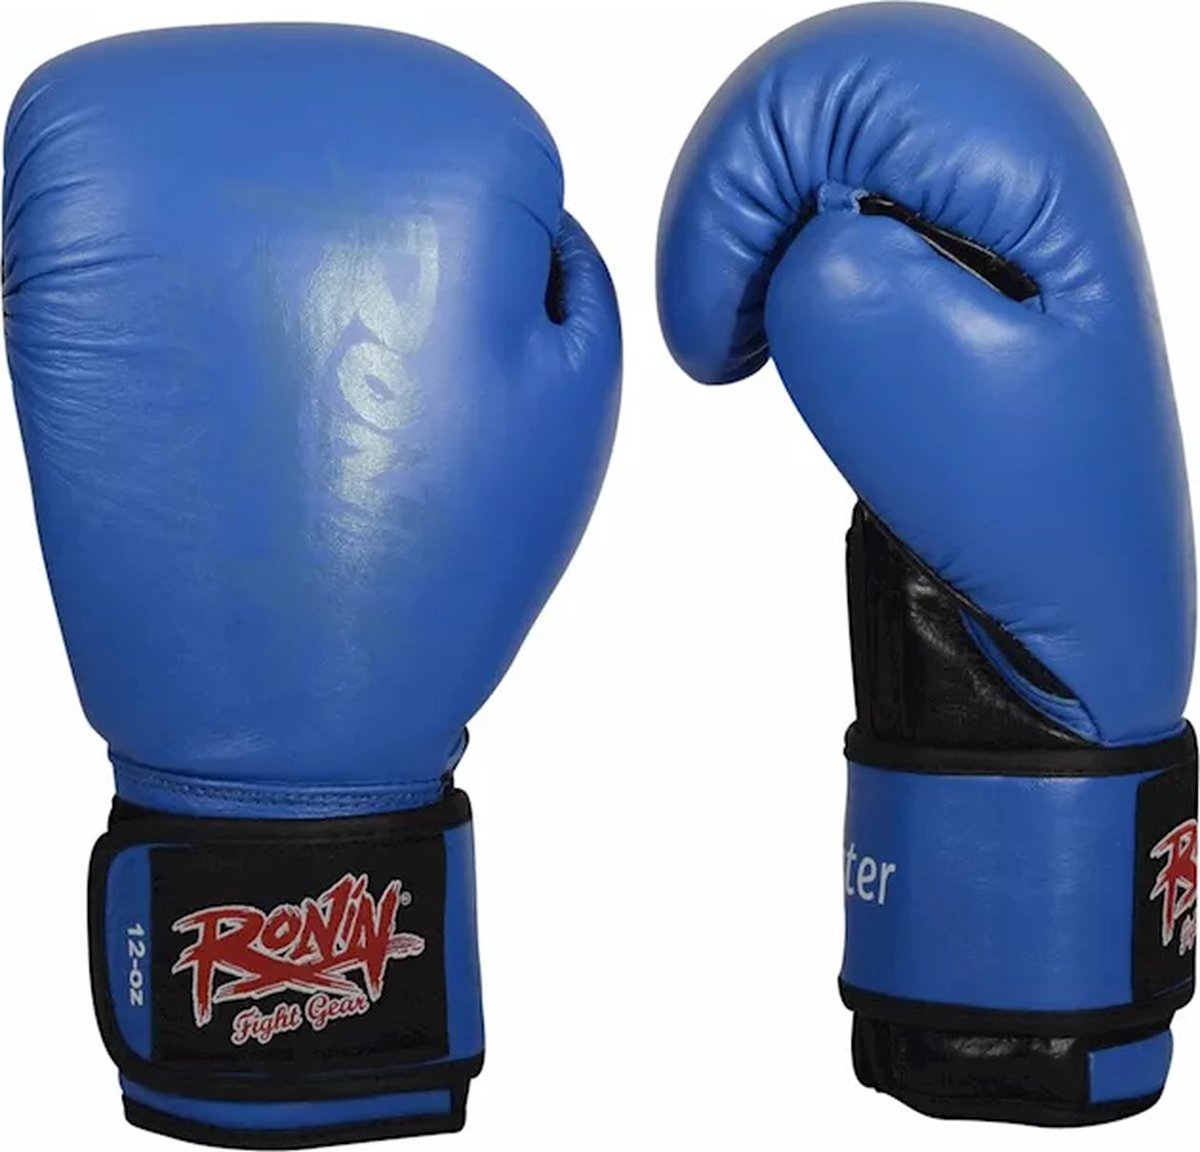 Ronin Fighter Bokshandschoen blauw/zwart 12oz